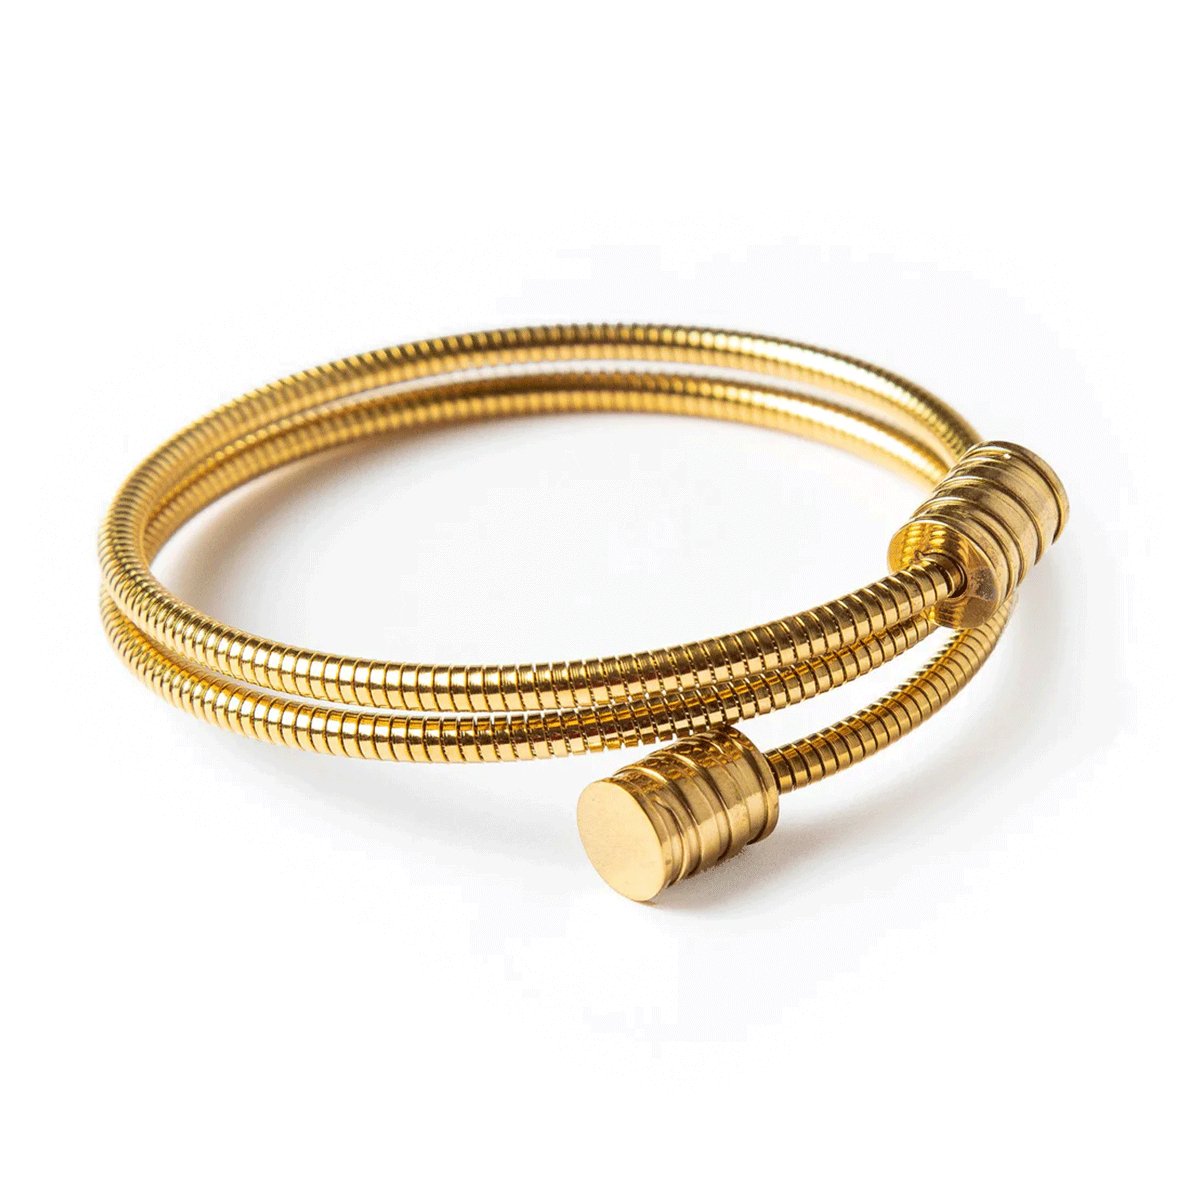 Bracelete Espiral Tríplice Banhada em Ouro 18K - Murano Joias